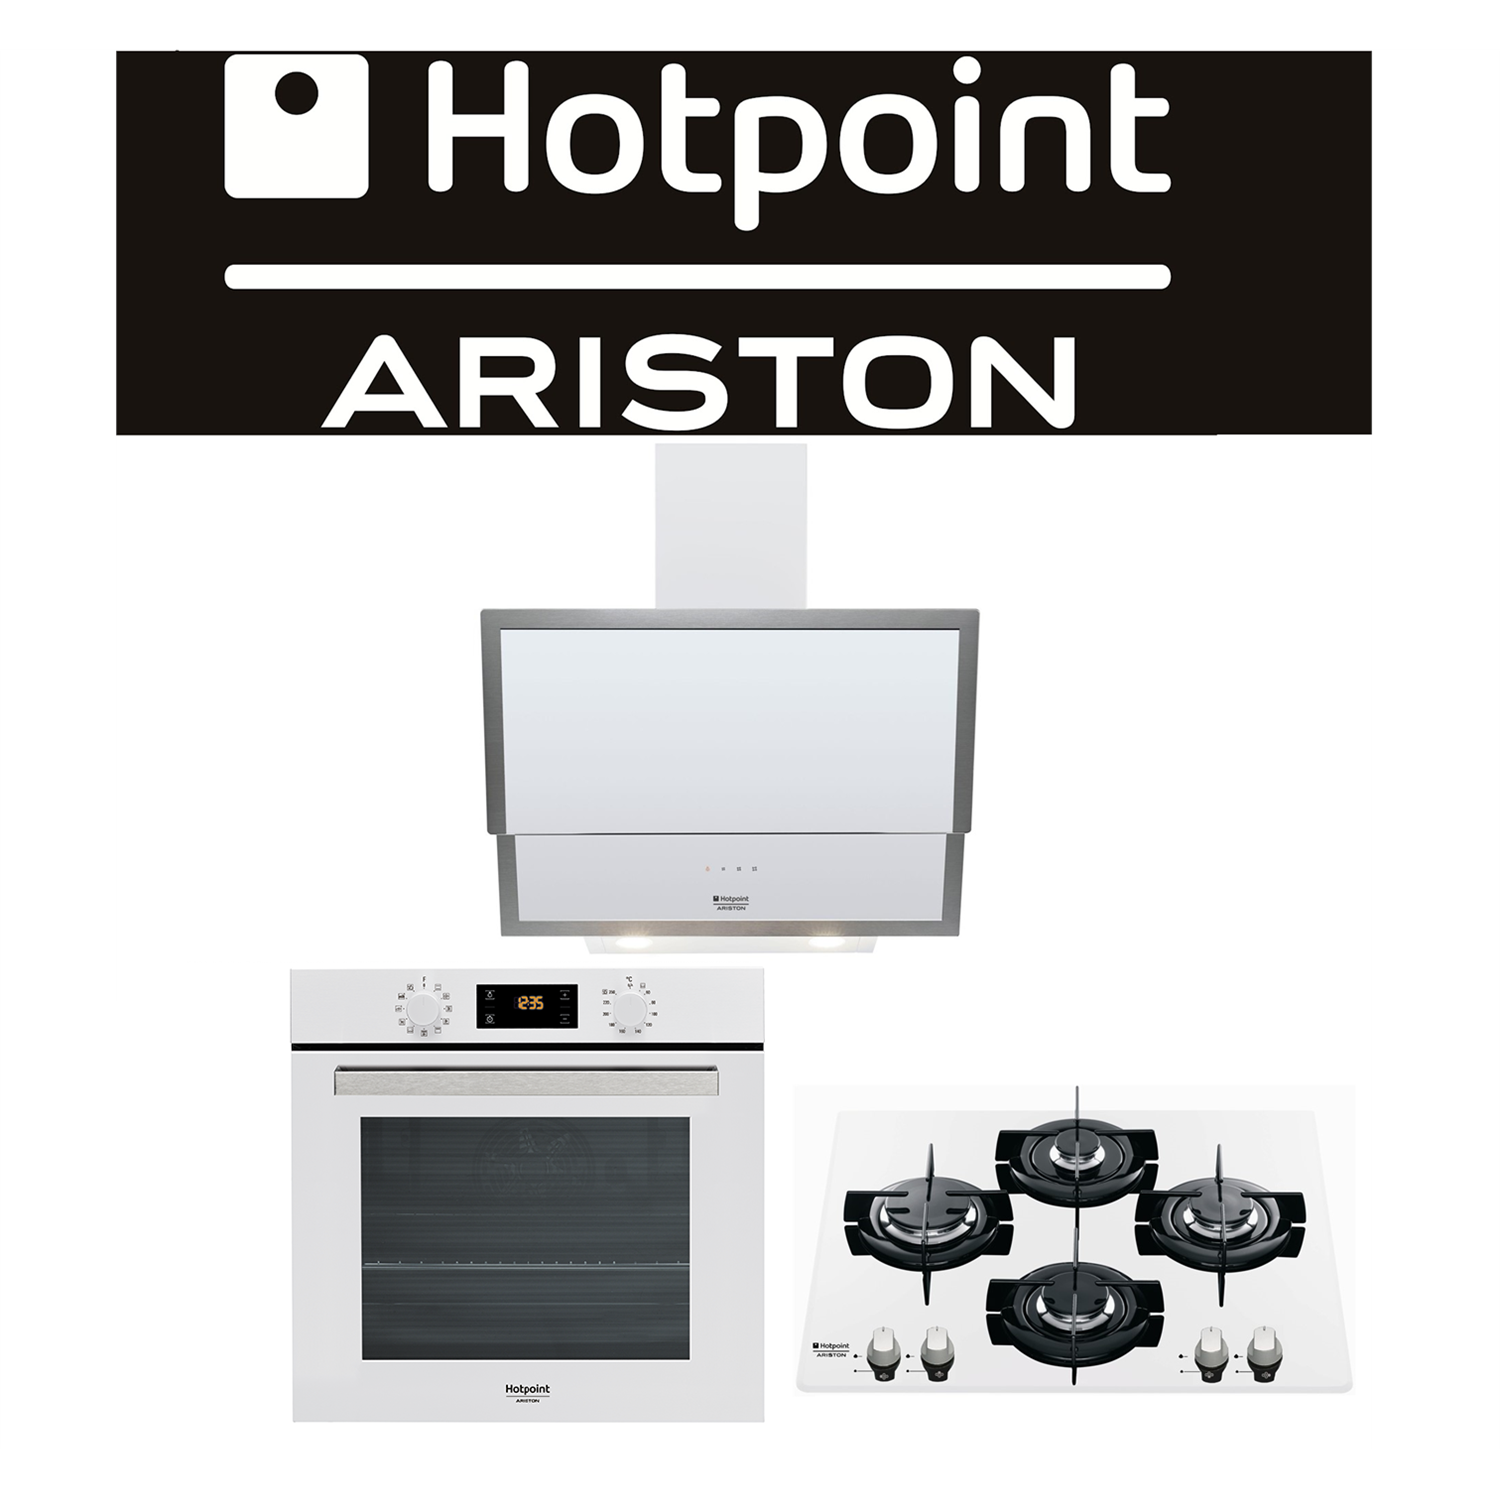 Ariston Logo Vector - Ariston